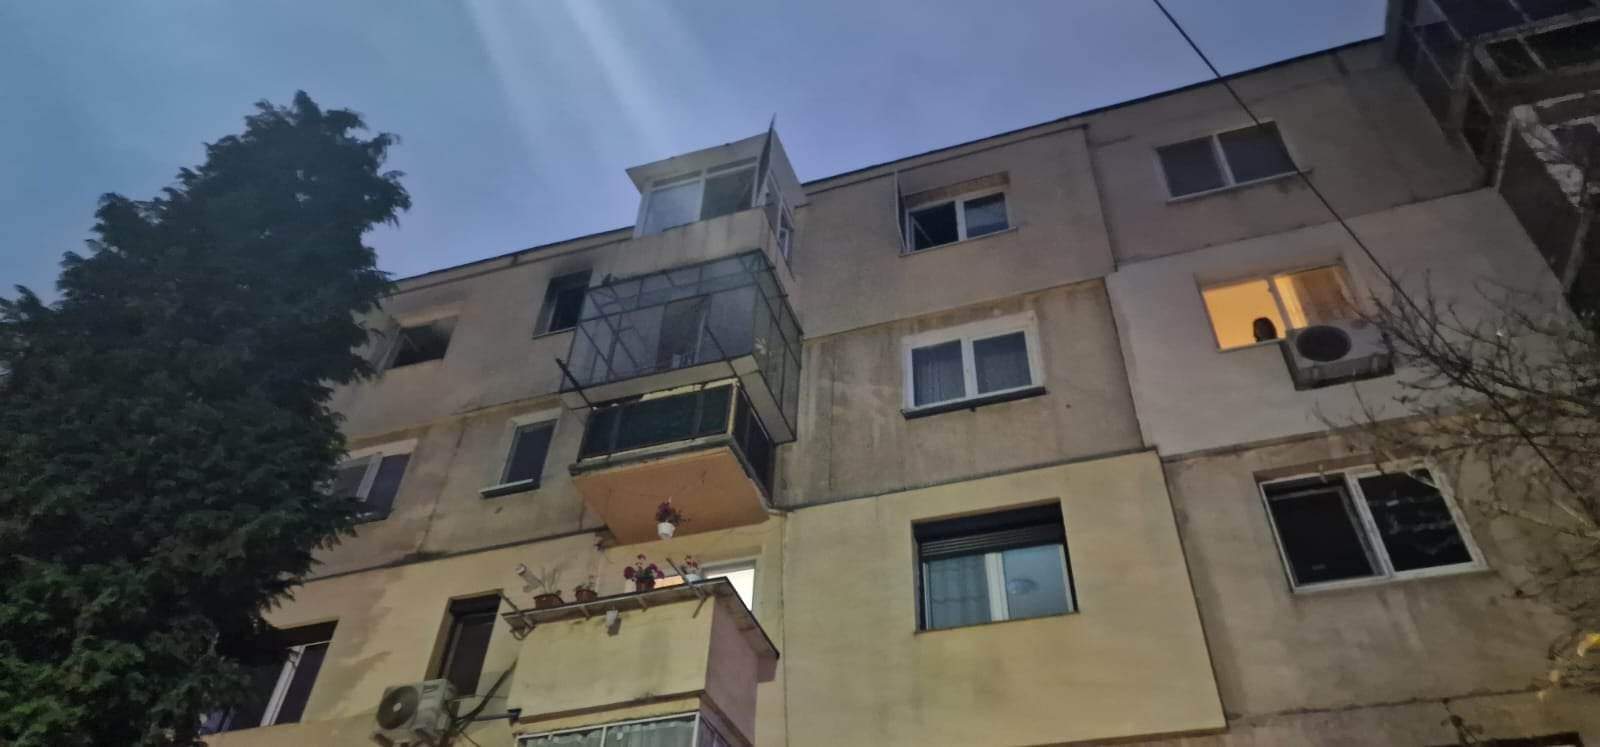 Breaking news! Incendiu la un apartament din Deva